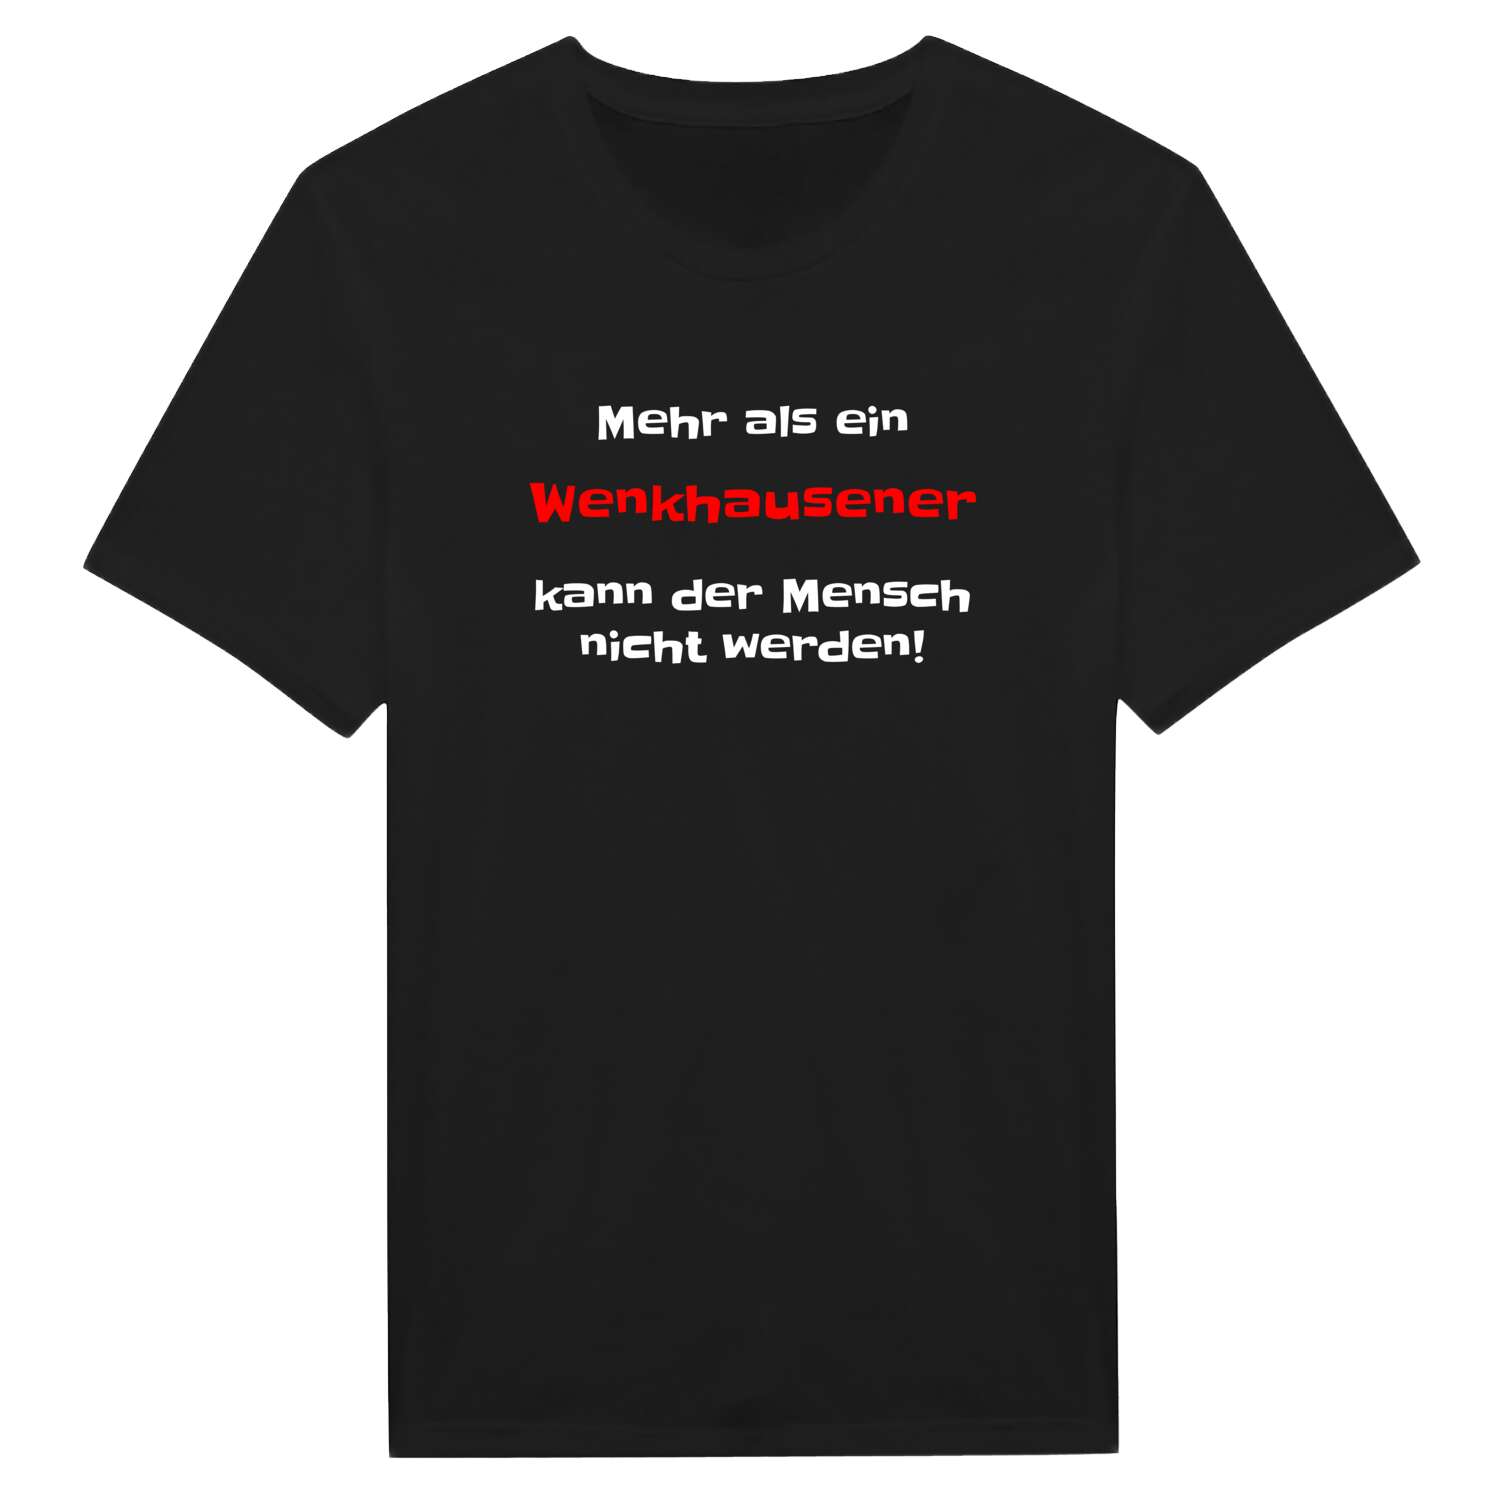 Wenkhausen T-Shirt »Mehr als ein«